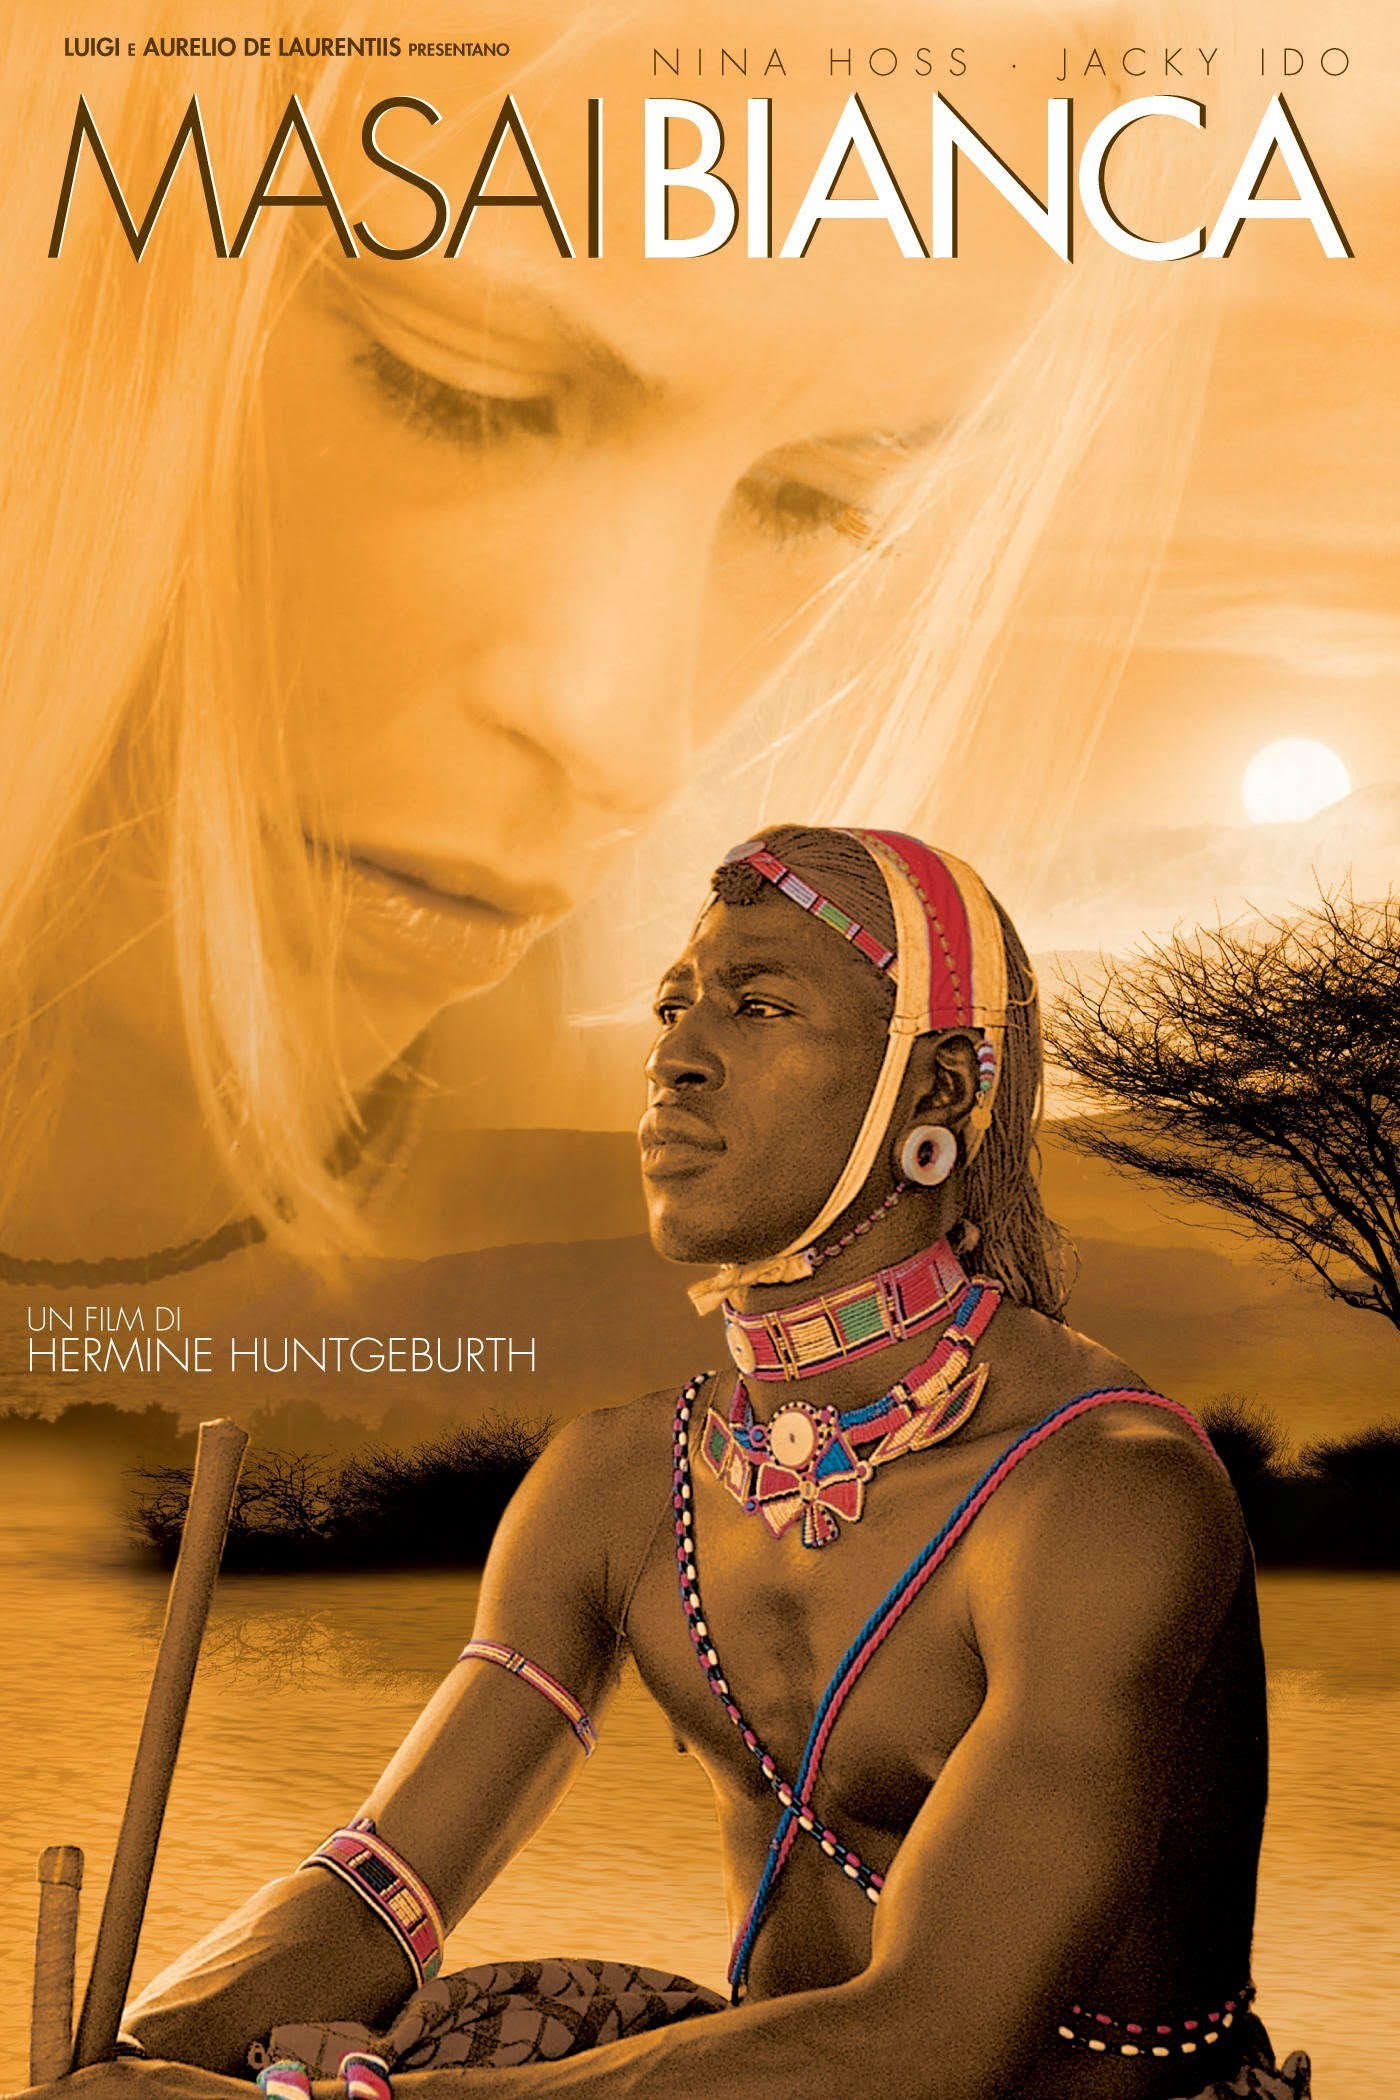 Masai bianca (2005)